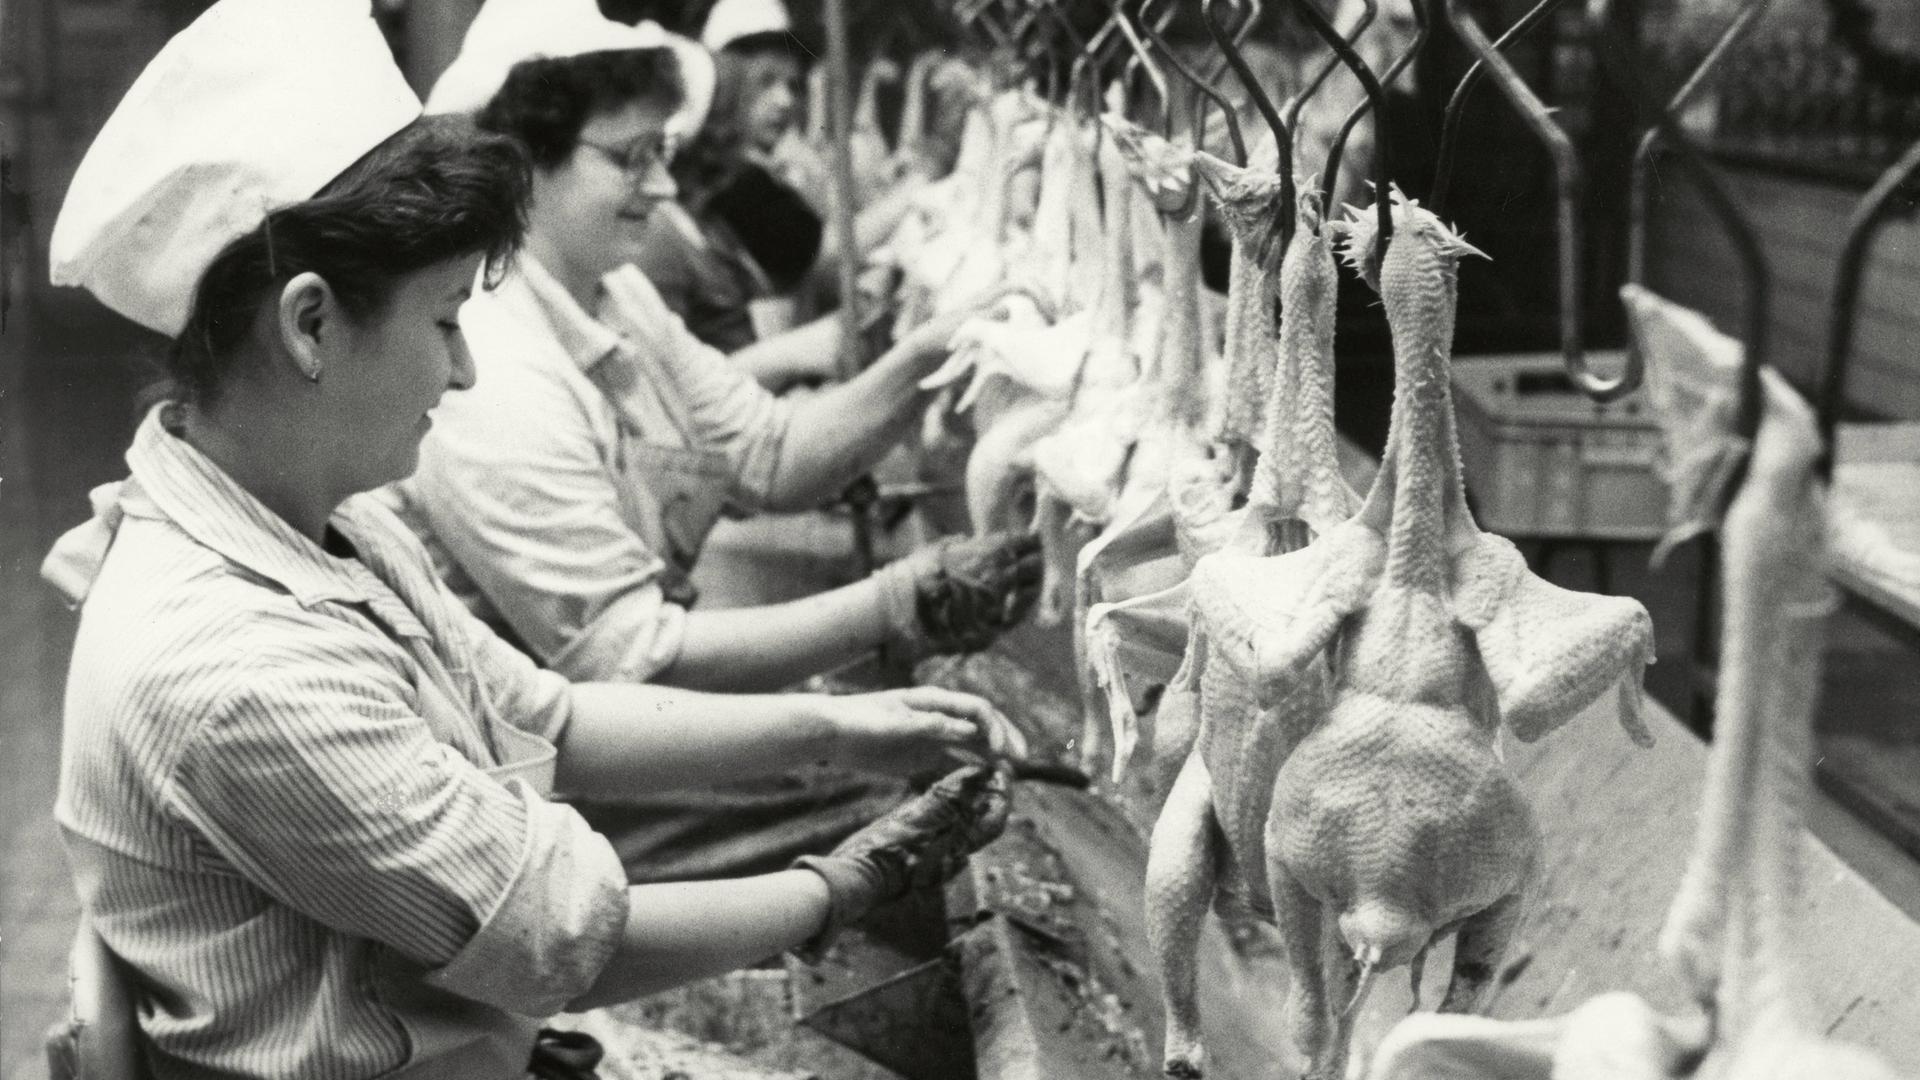 Industrielle Verarbeitung von Geflügel in der DDR (1989): Arbeiterinnen beim Ausnehmen von Gefügel im Geflügelschlachtbetrieb in Schleusingen (Thüringen).